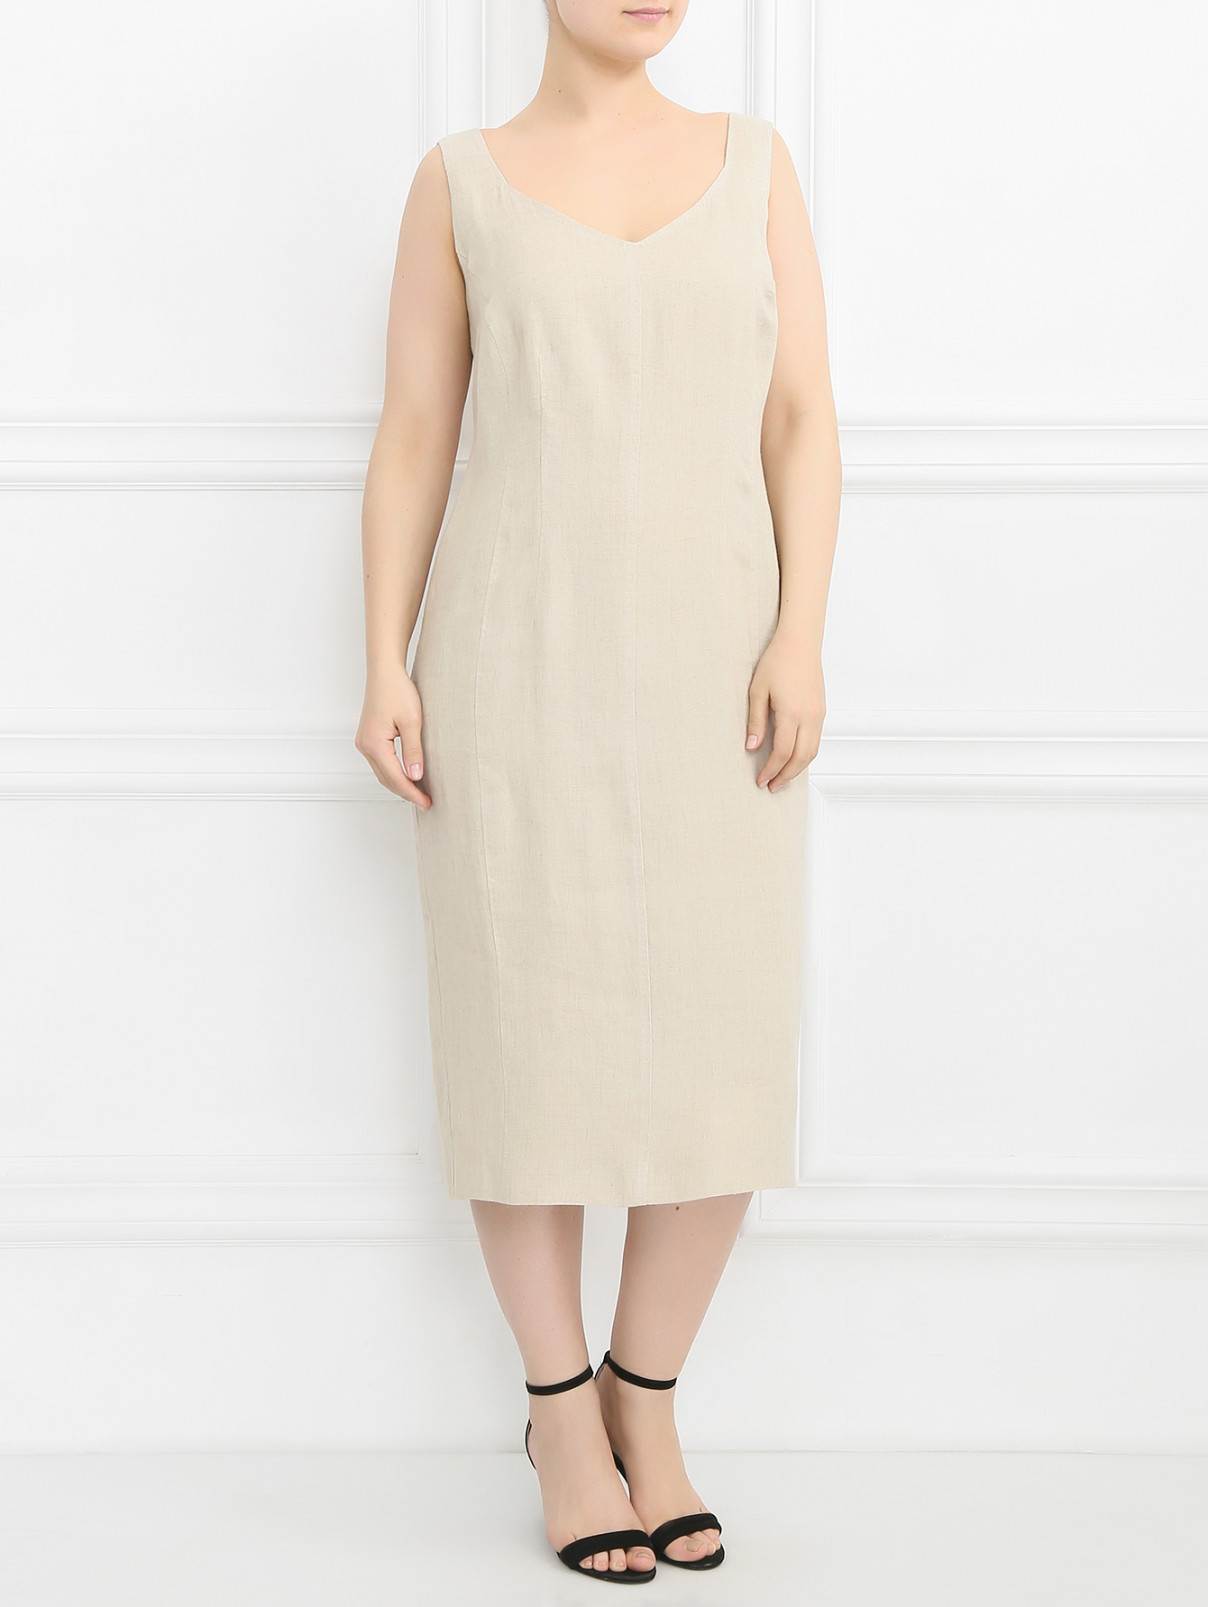 Платье из льна Marina Rinaldi  –  Модель Общий вид  – Цвет:  Бежевый